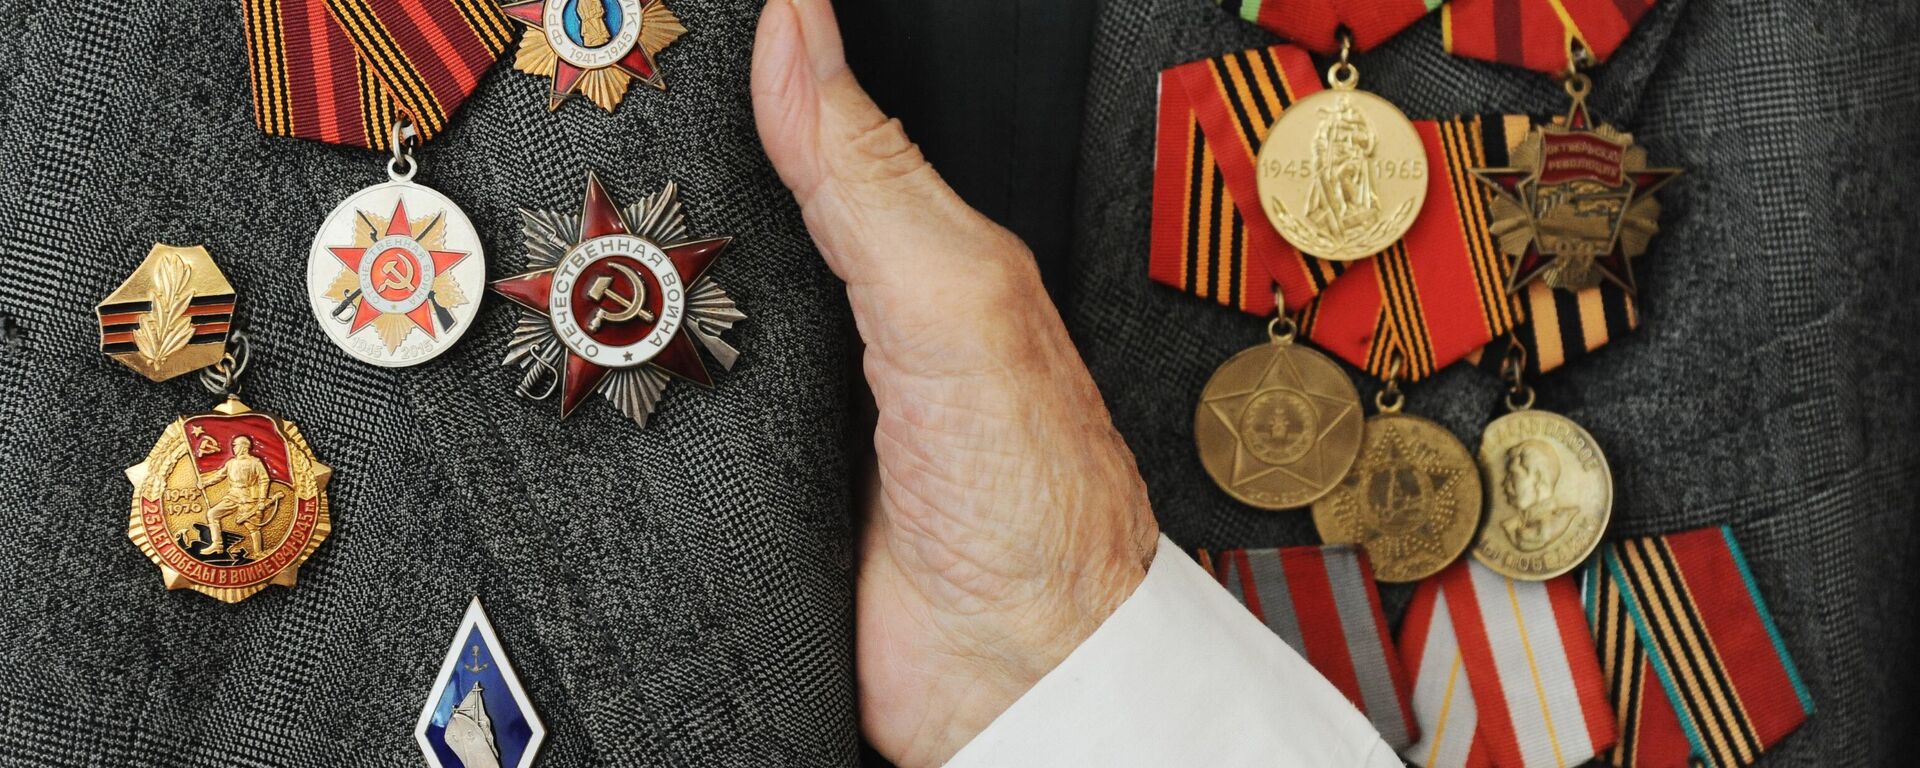 Боевые награды и юбилейные медали ветерана Великой Отечественной войны - Sputnik Узбекистан, 1920, 21.04.2021